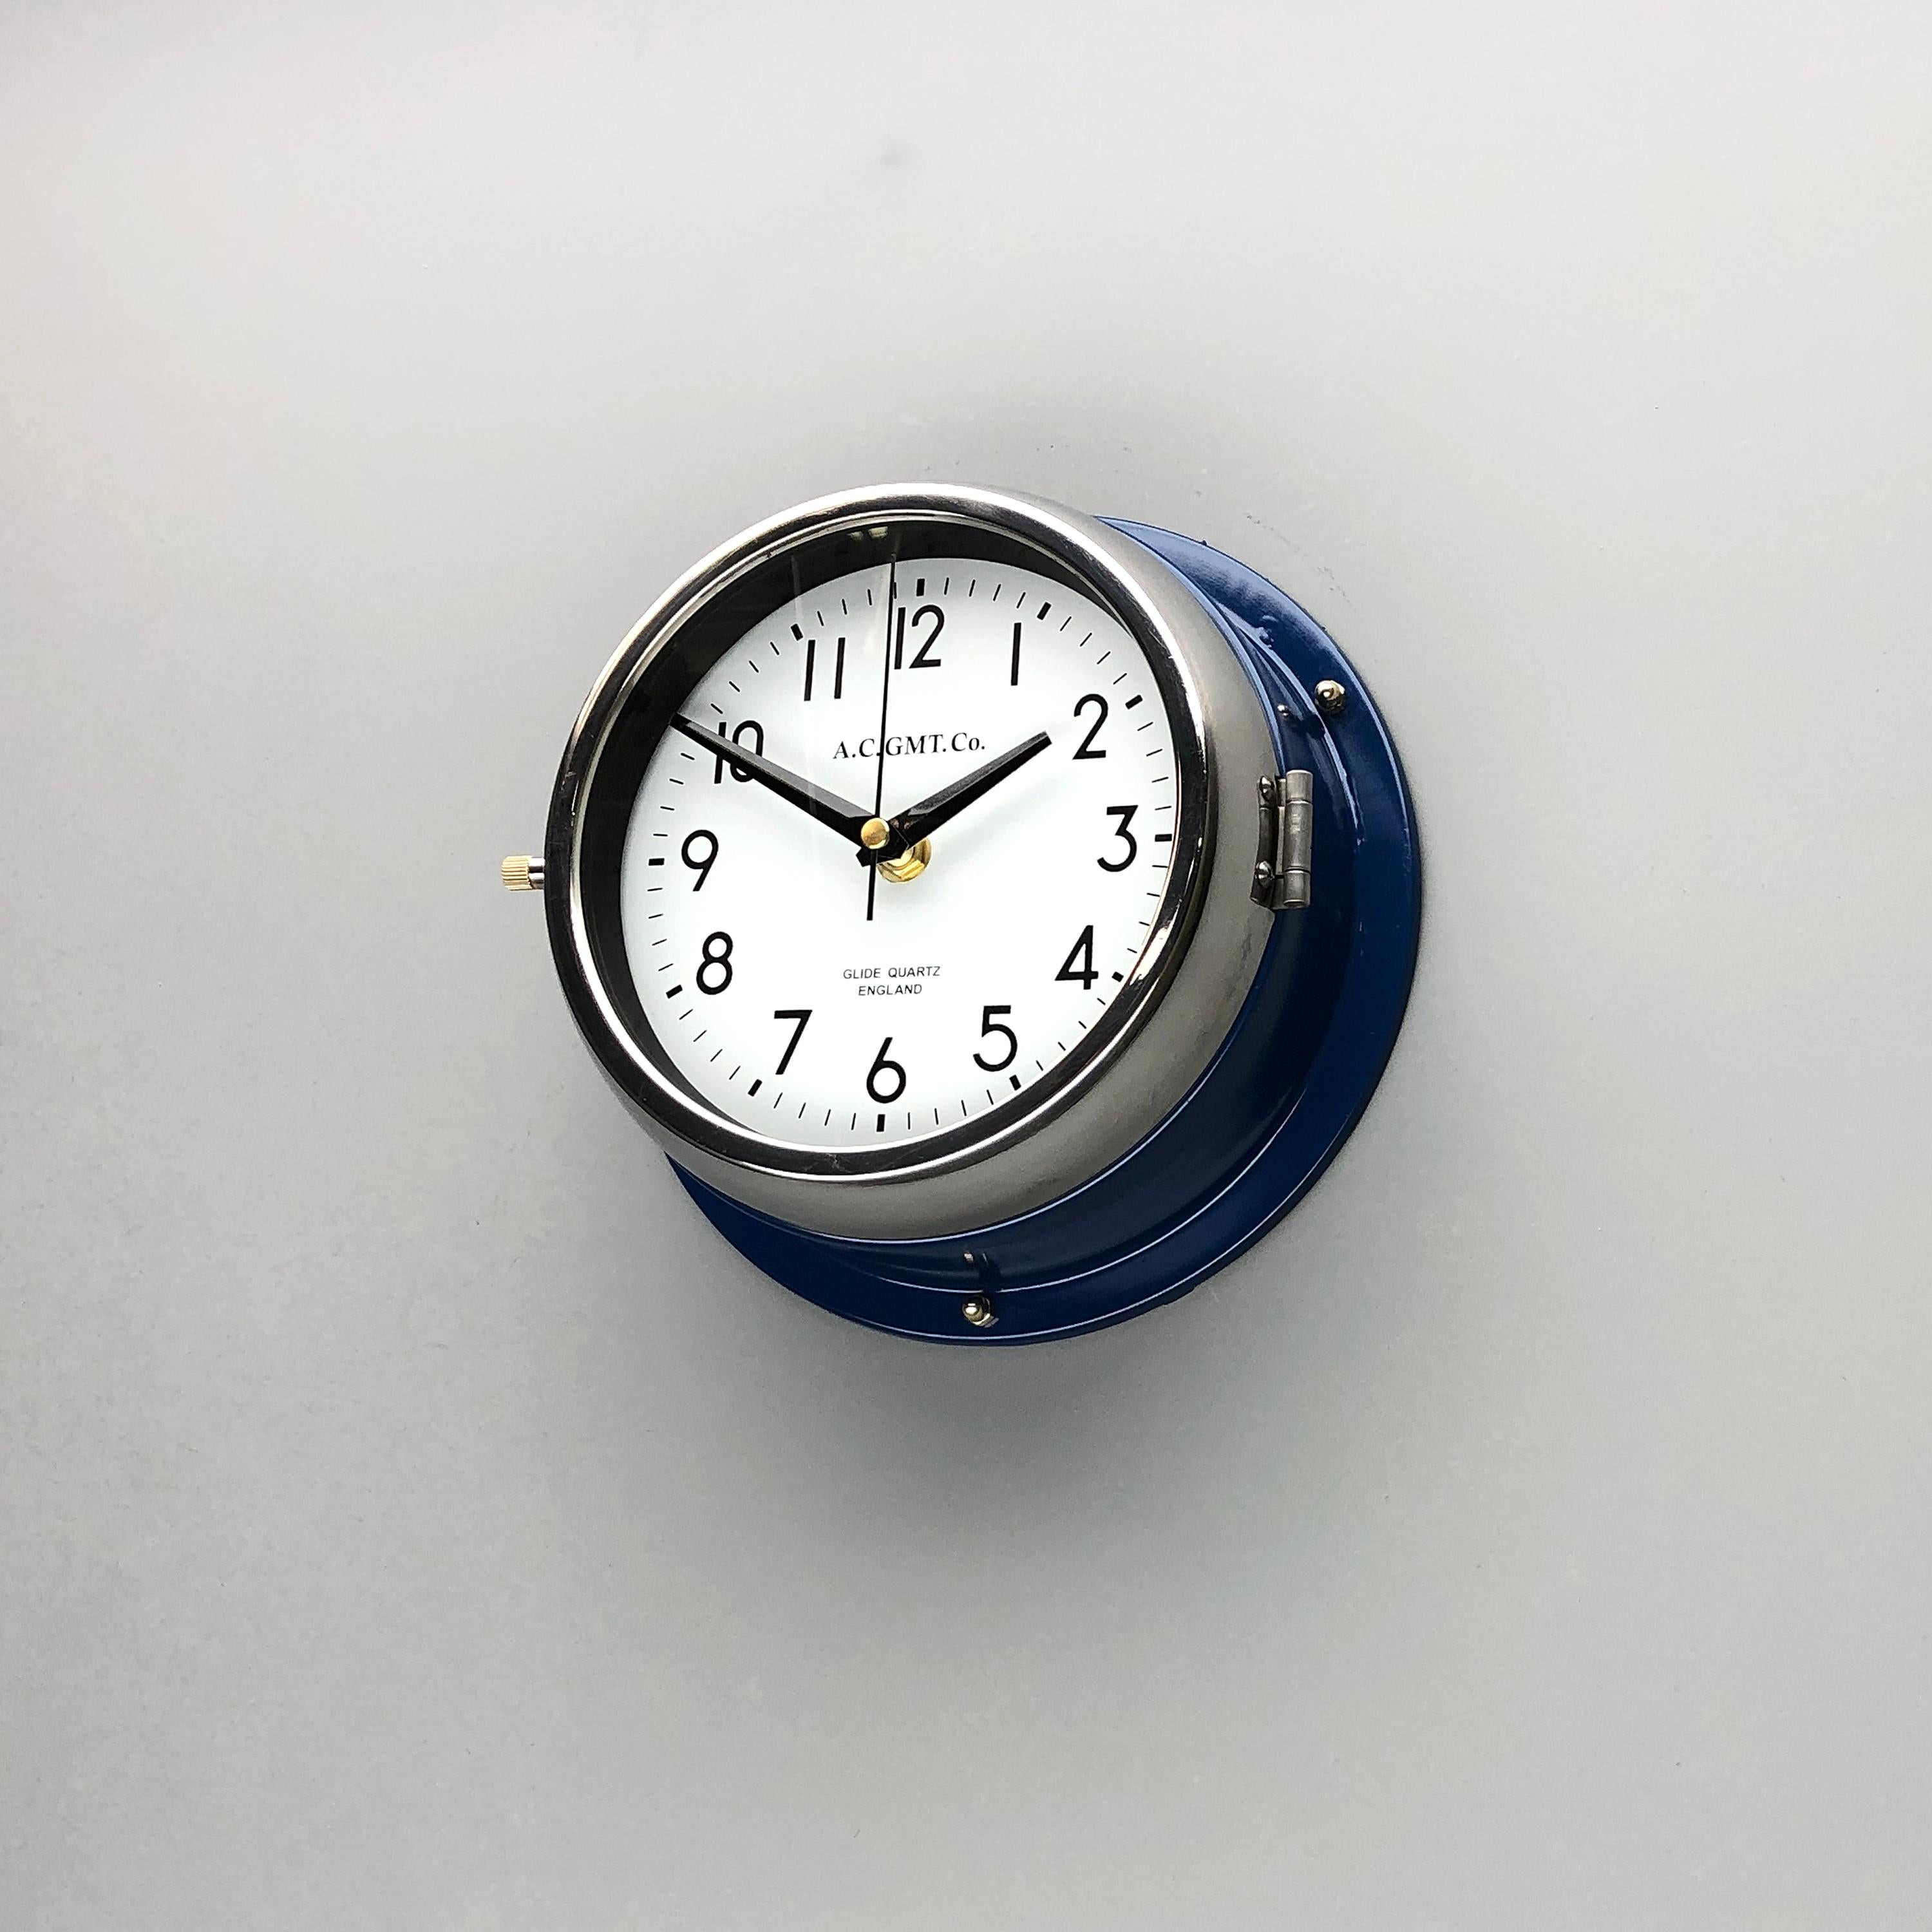 Vernissé Ac Gmt Co., British Classic Blue & Chrome, années 1970 Horloge murale industrielle avec cadran blanc en vente